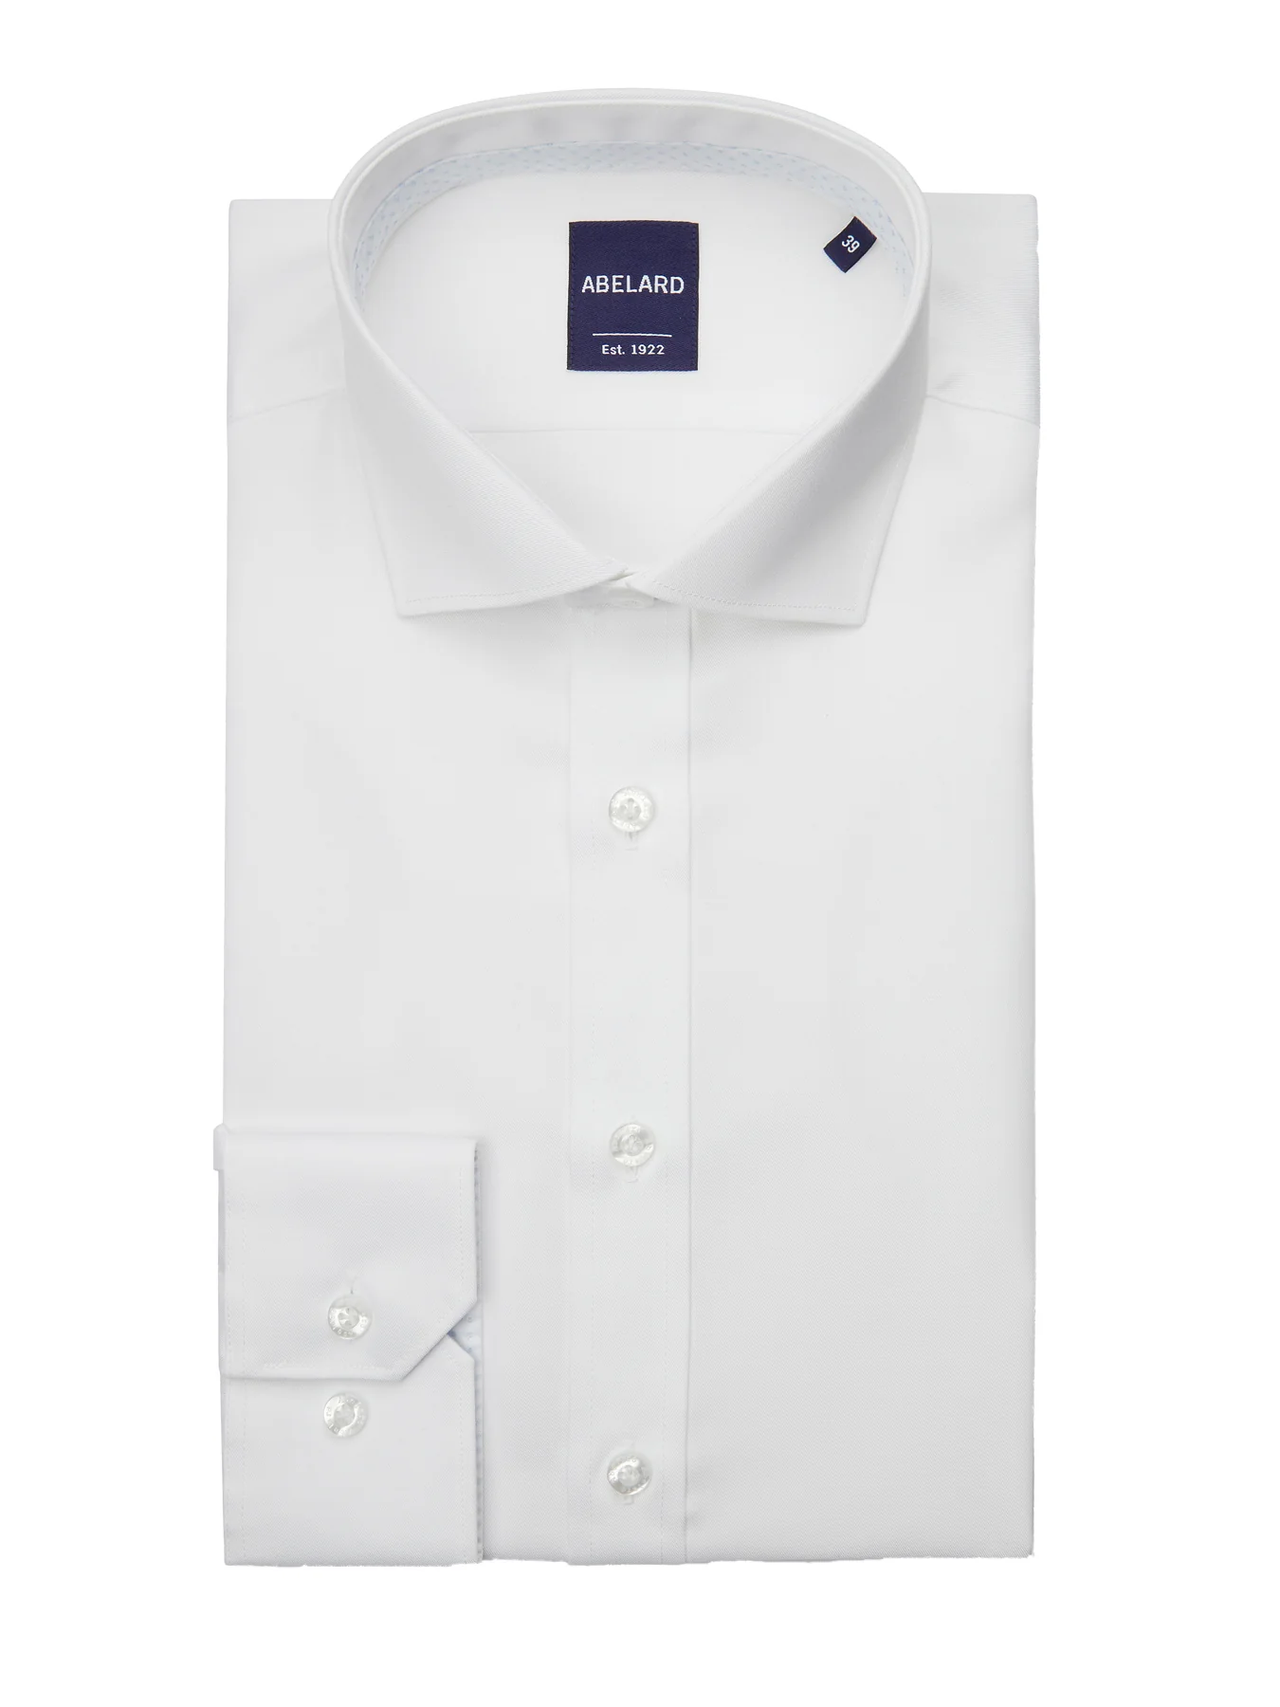 ABELARD Non Iron Cotton Twill Shirt Single4 Cuff Slim Fit WHITE